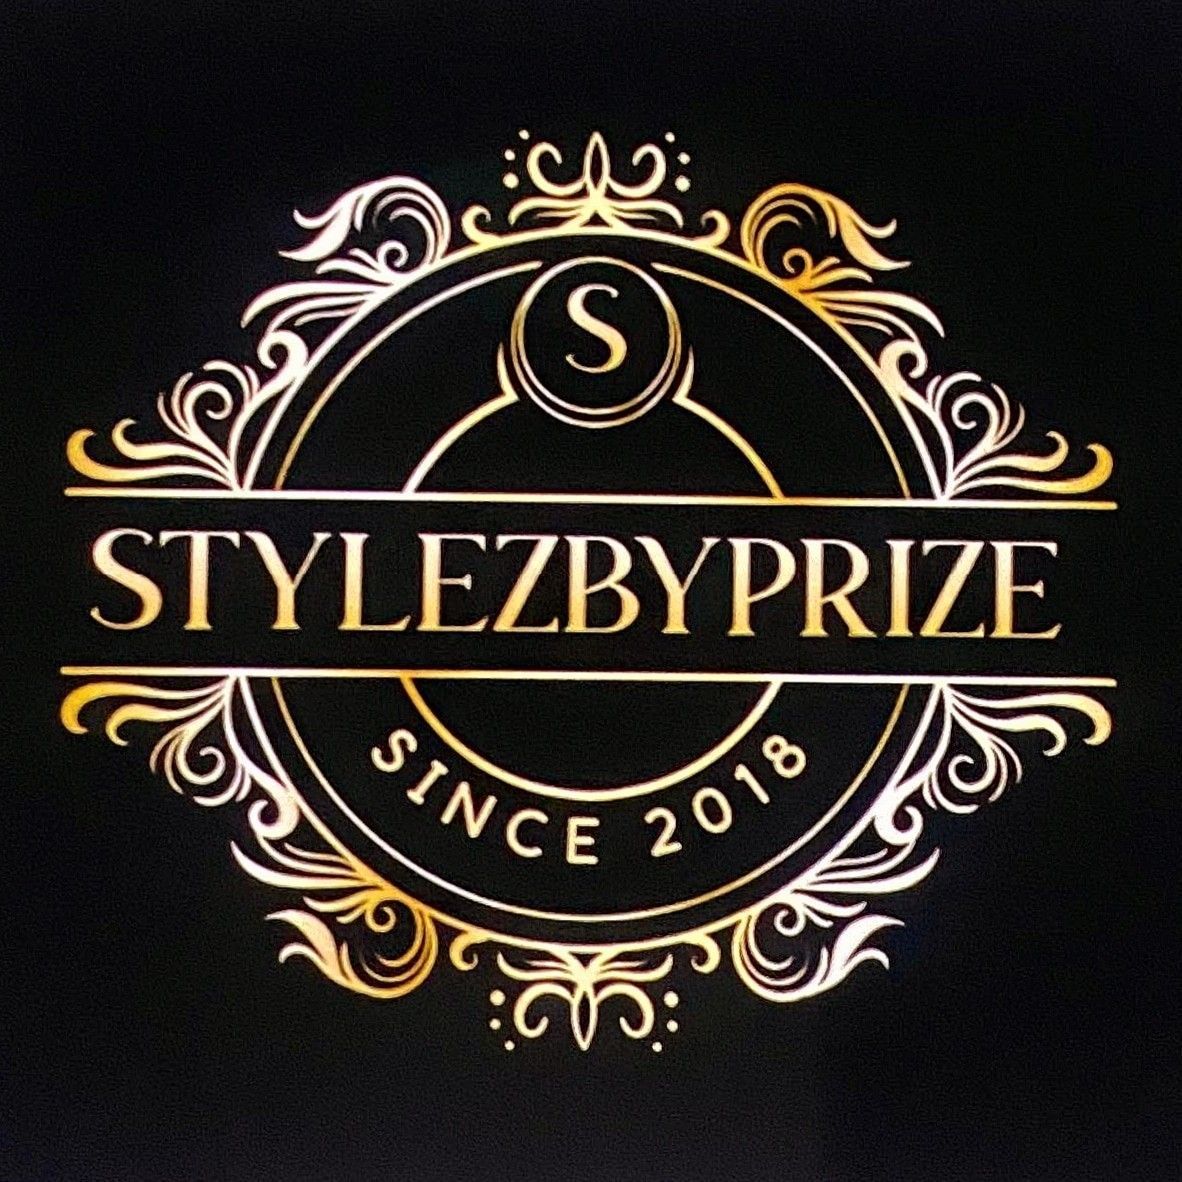 StylezByPrize, 341 Stonebridge Cir, Savannah, 31419